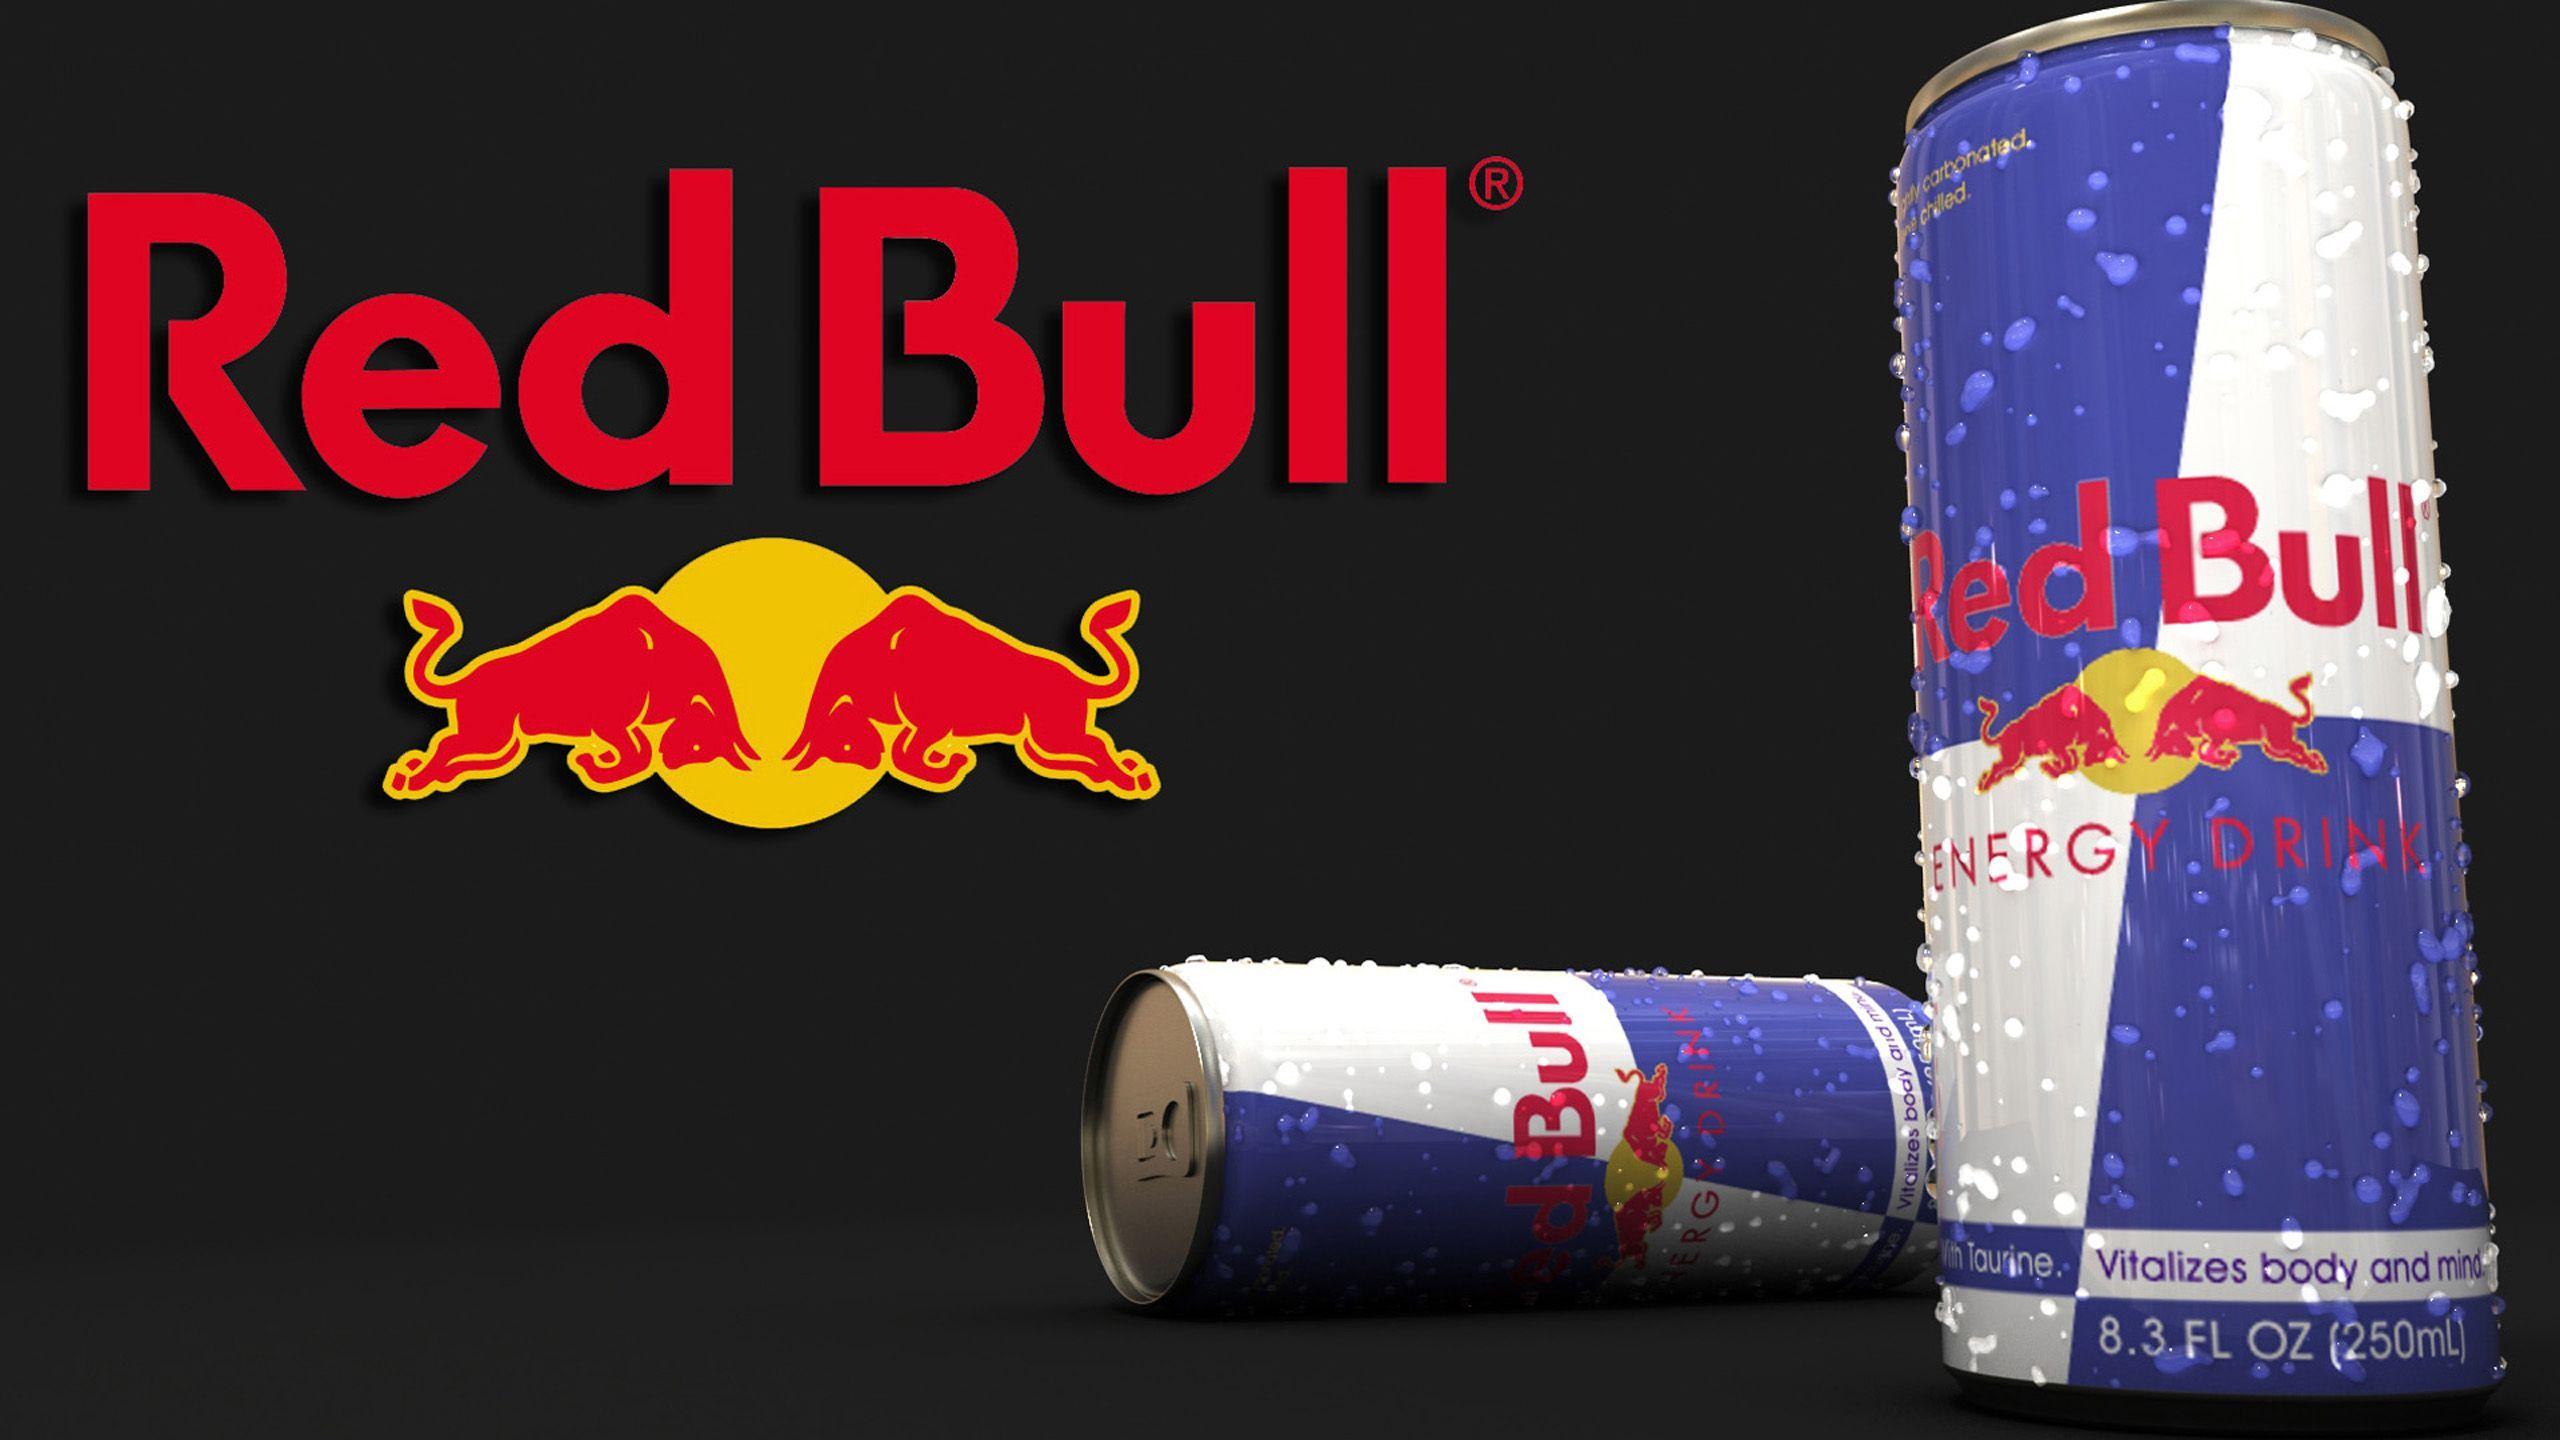 Red Bull HD Wallpaper 3. HD Wallpaper. Red bull, HD